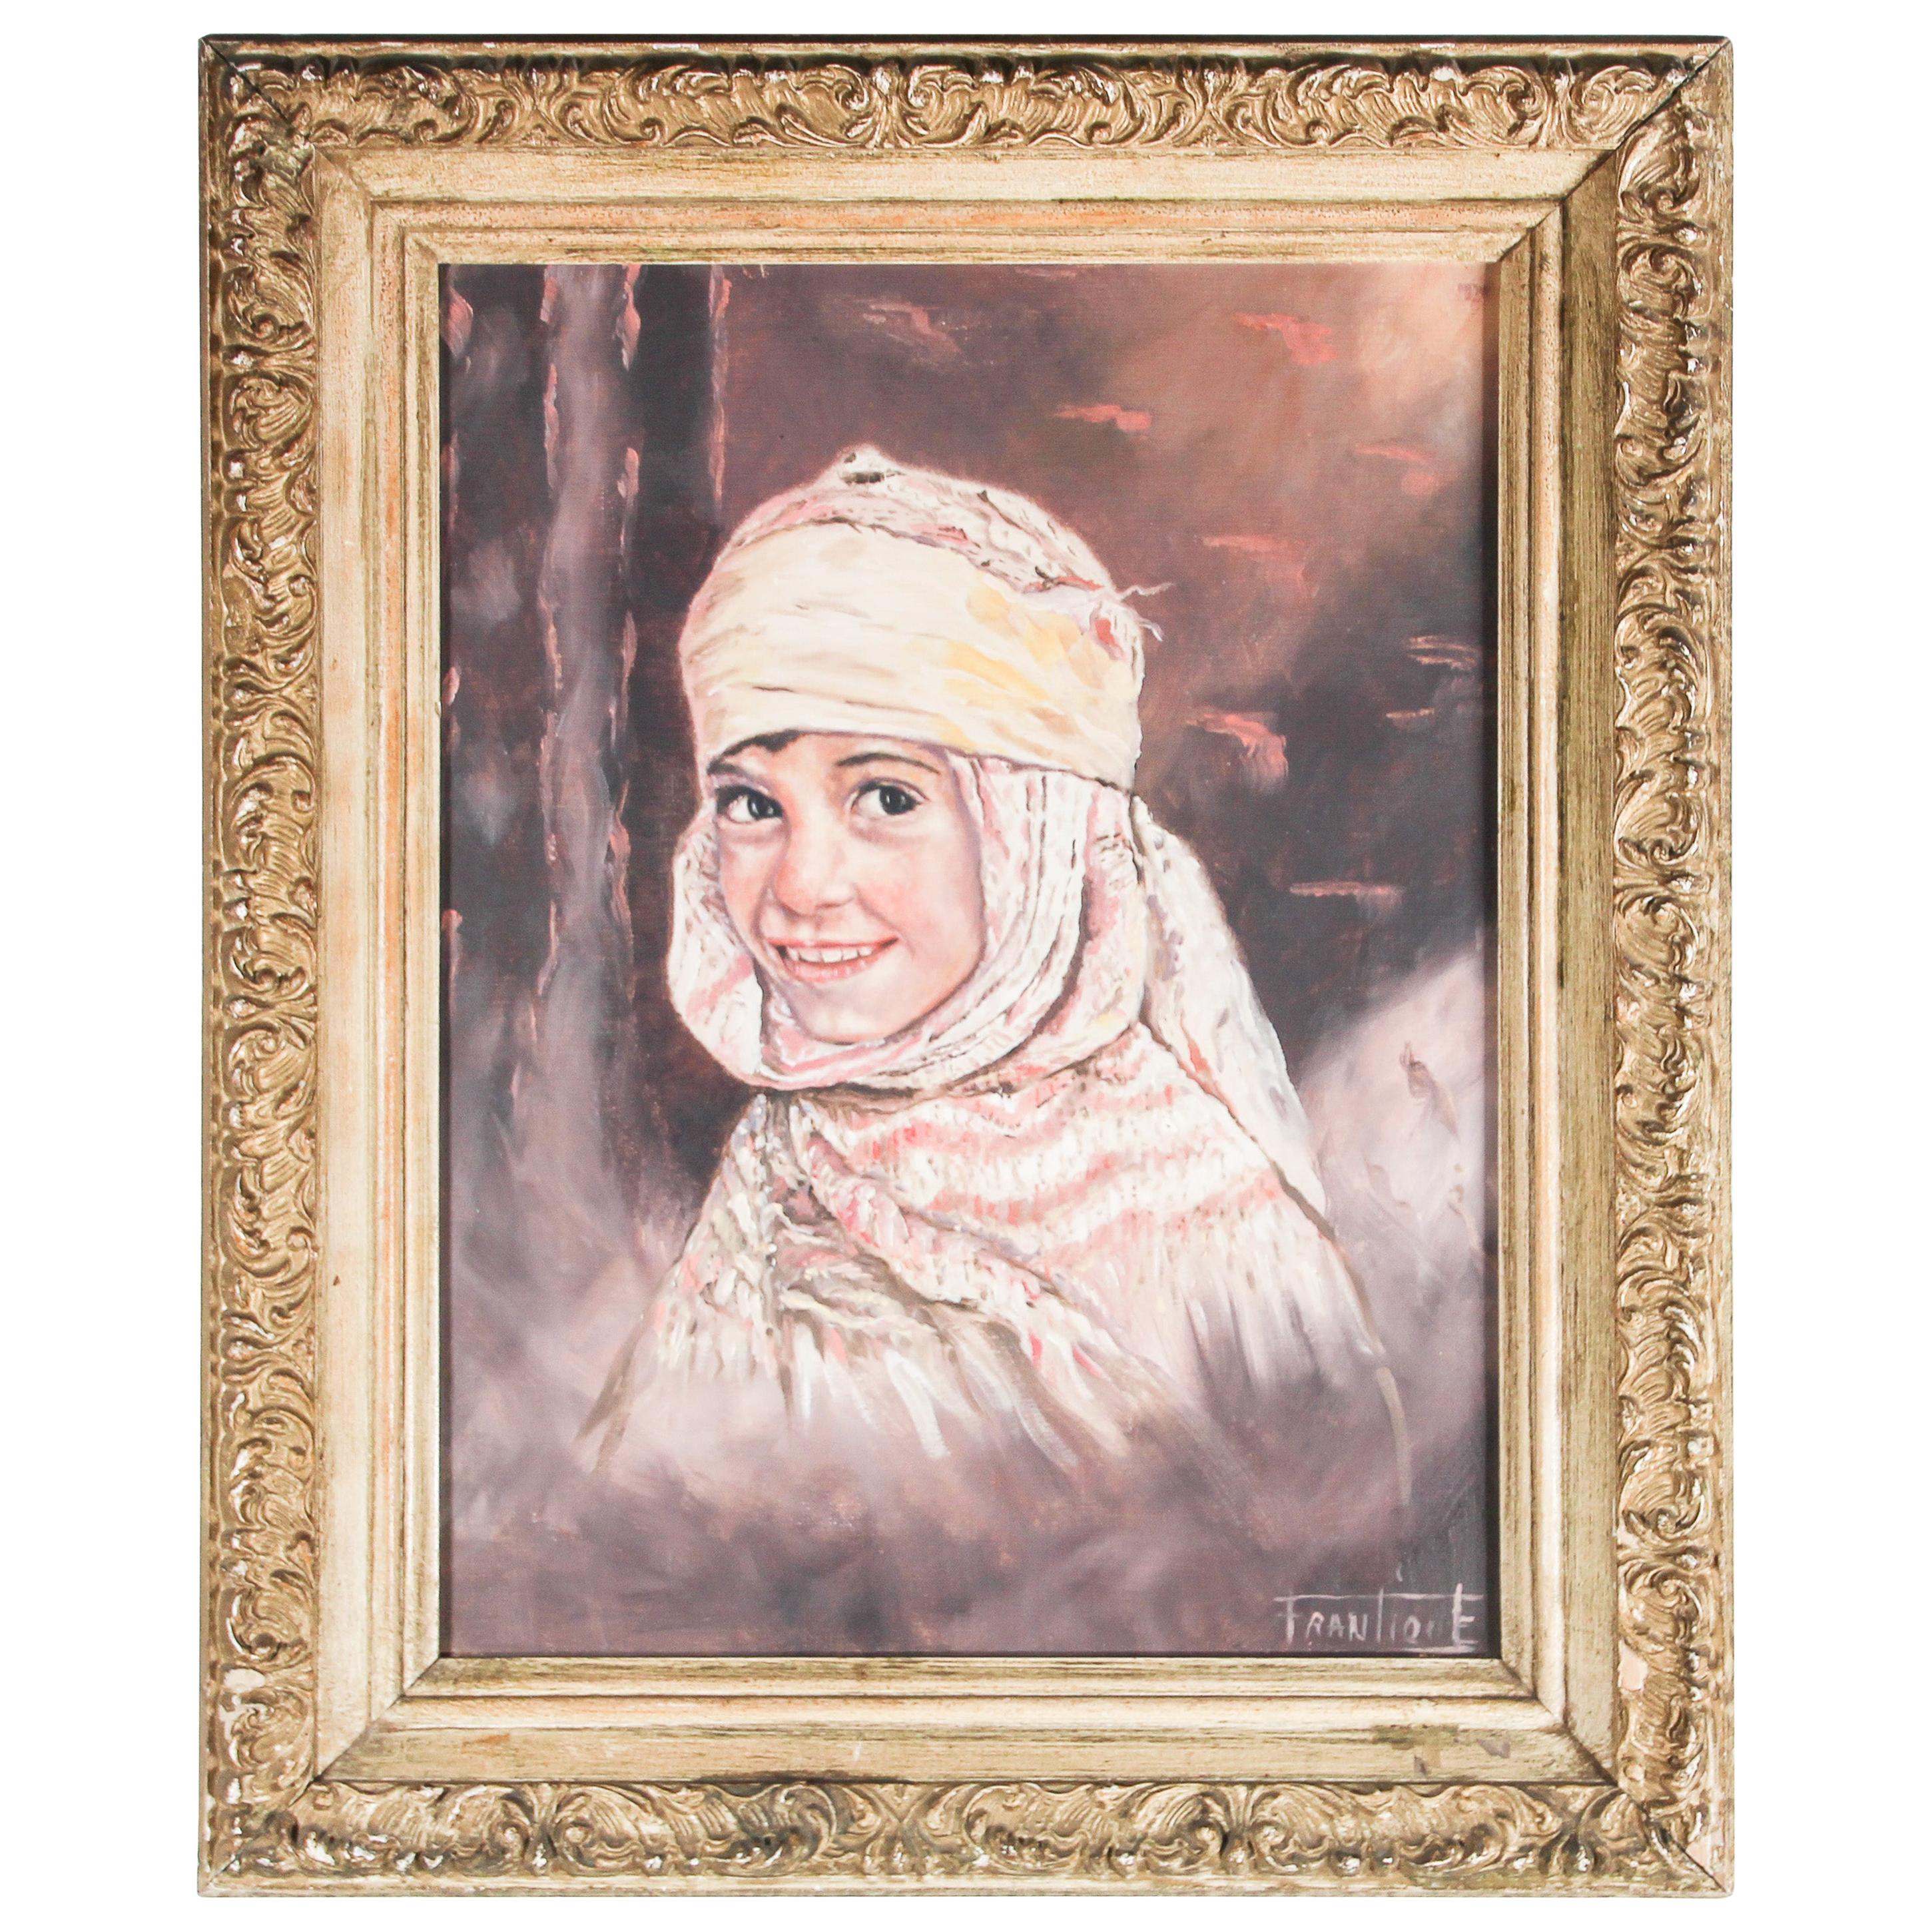 Orientalisches Ölgemälde auf Leinwand, Vintage, Porträt eines jungen Mädchens